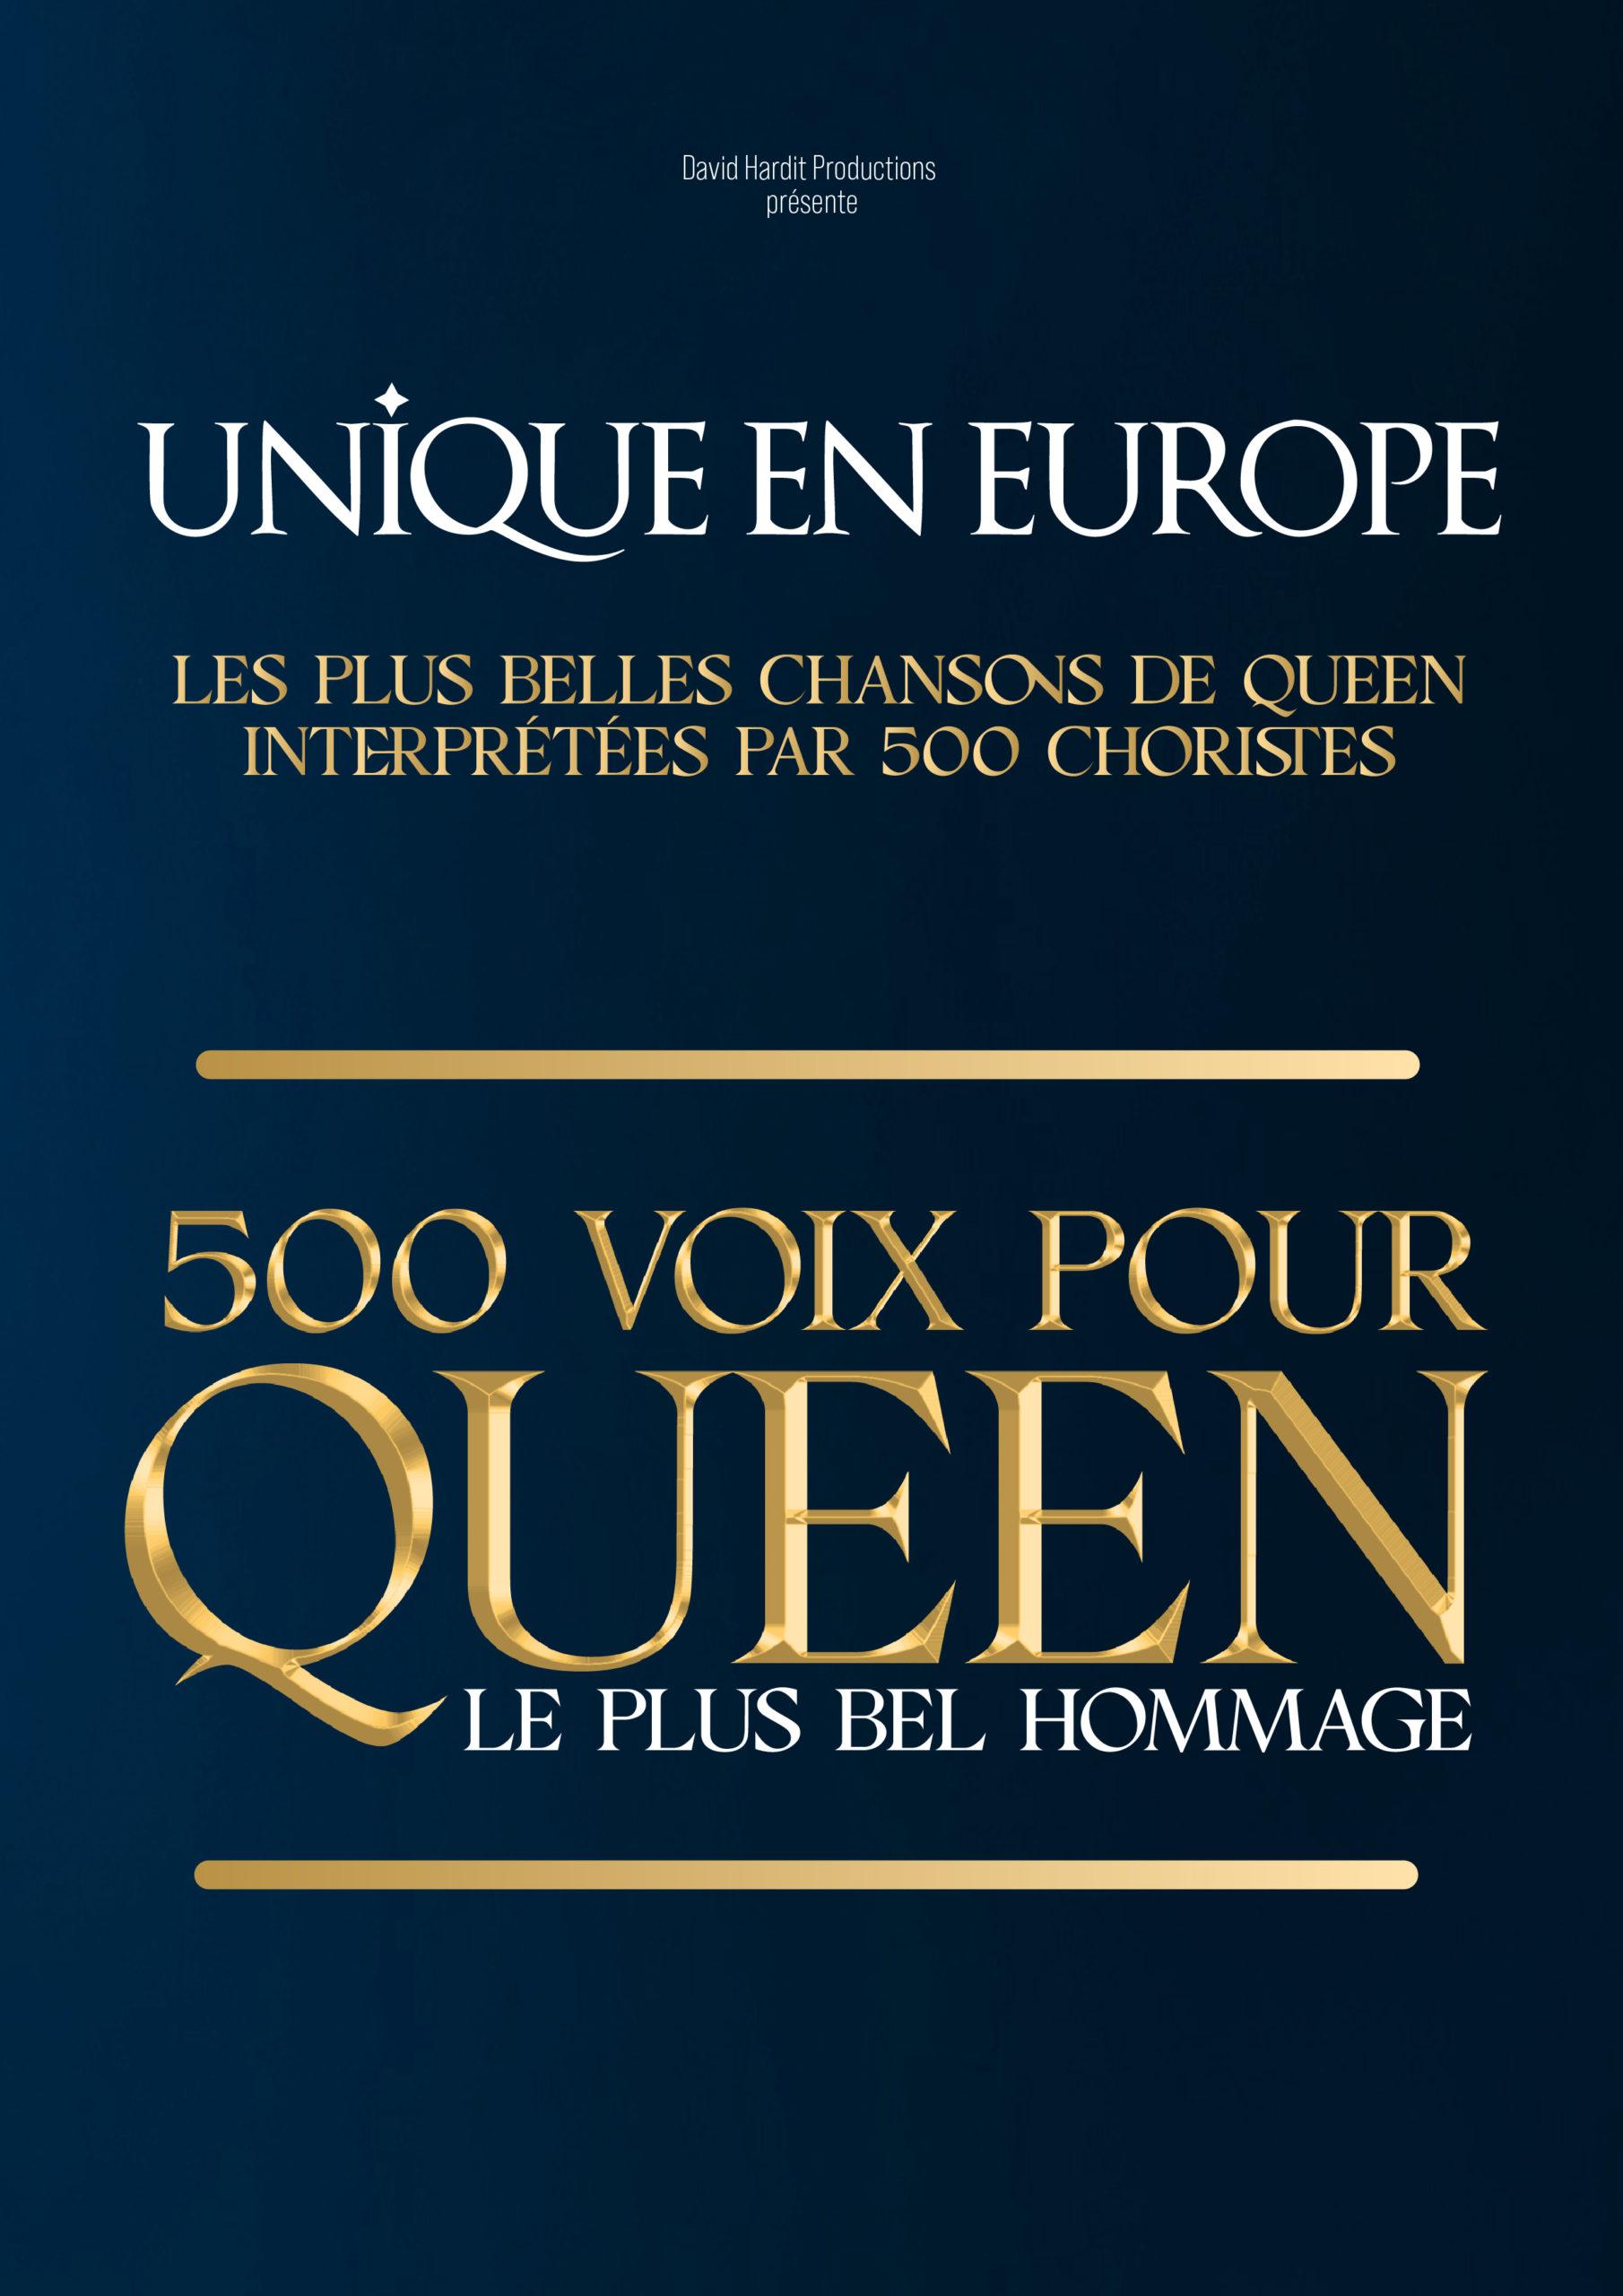 500 voix pour queen - Zenith d'Auvergne - Clermont-Ferrand (63)